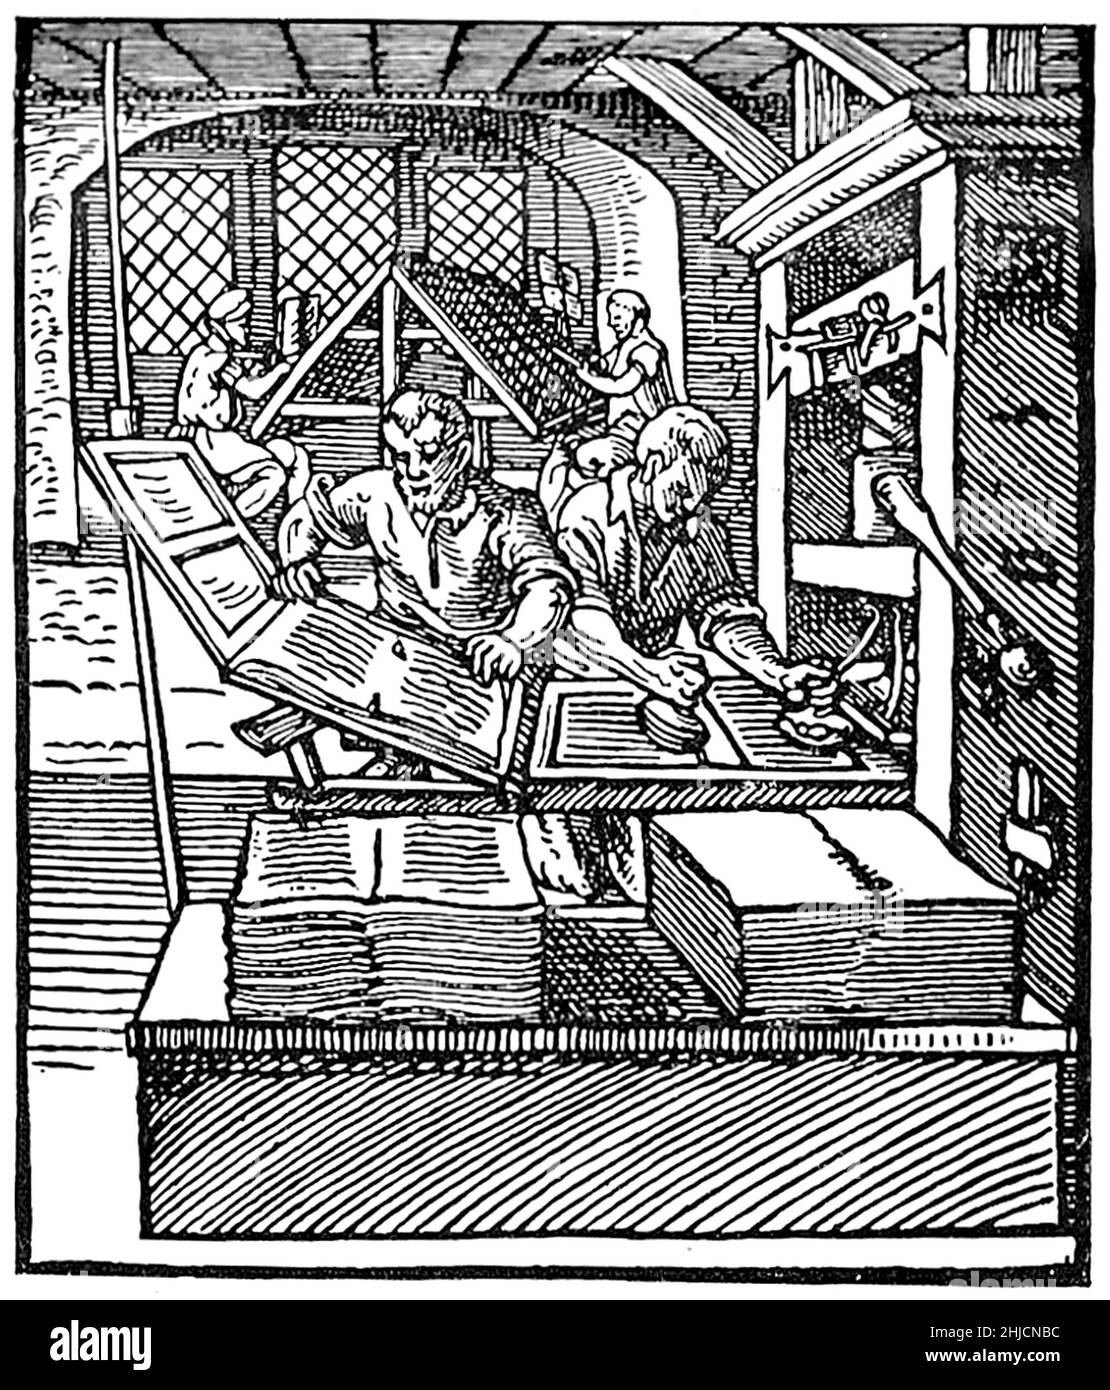 Holzschnitt von mittelalterlichen Handwerkern, die in einer Druckmaschine aus dem 16th. Jahrhundert arbeiten. Die Drucker stehen im Vordergrund, im Hintergrund arbeiten zwei Compositoren am Satz und bereiten die Druckblöcke vor. Illustration aus Jost Ammans Buch der Trades, 1568. Stockfoto